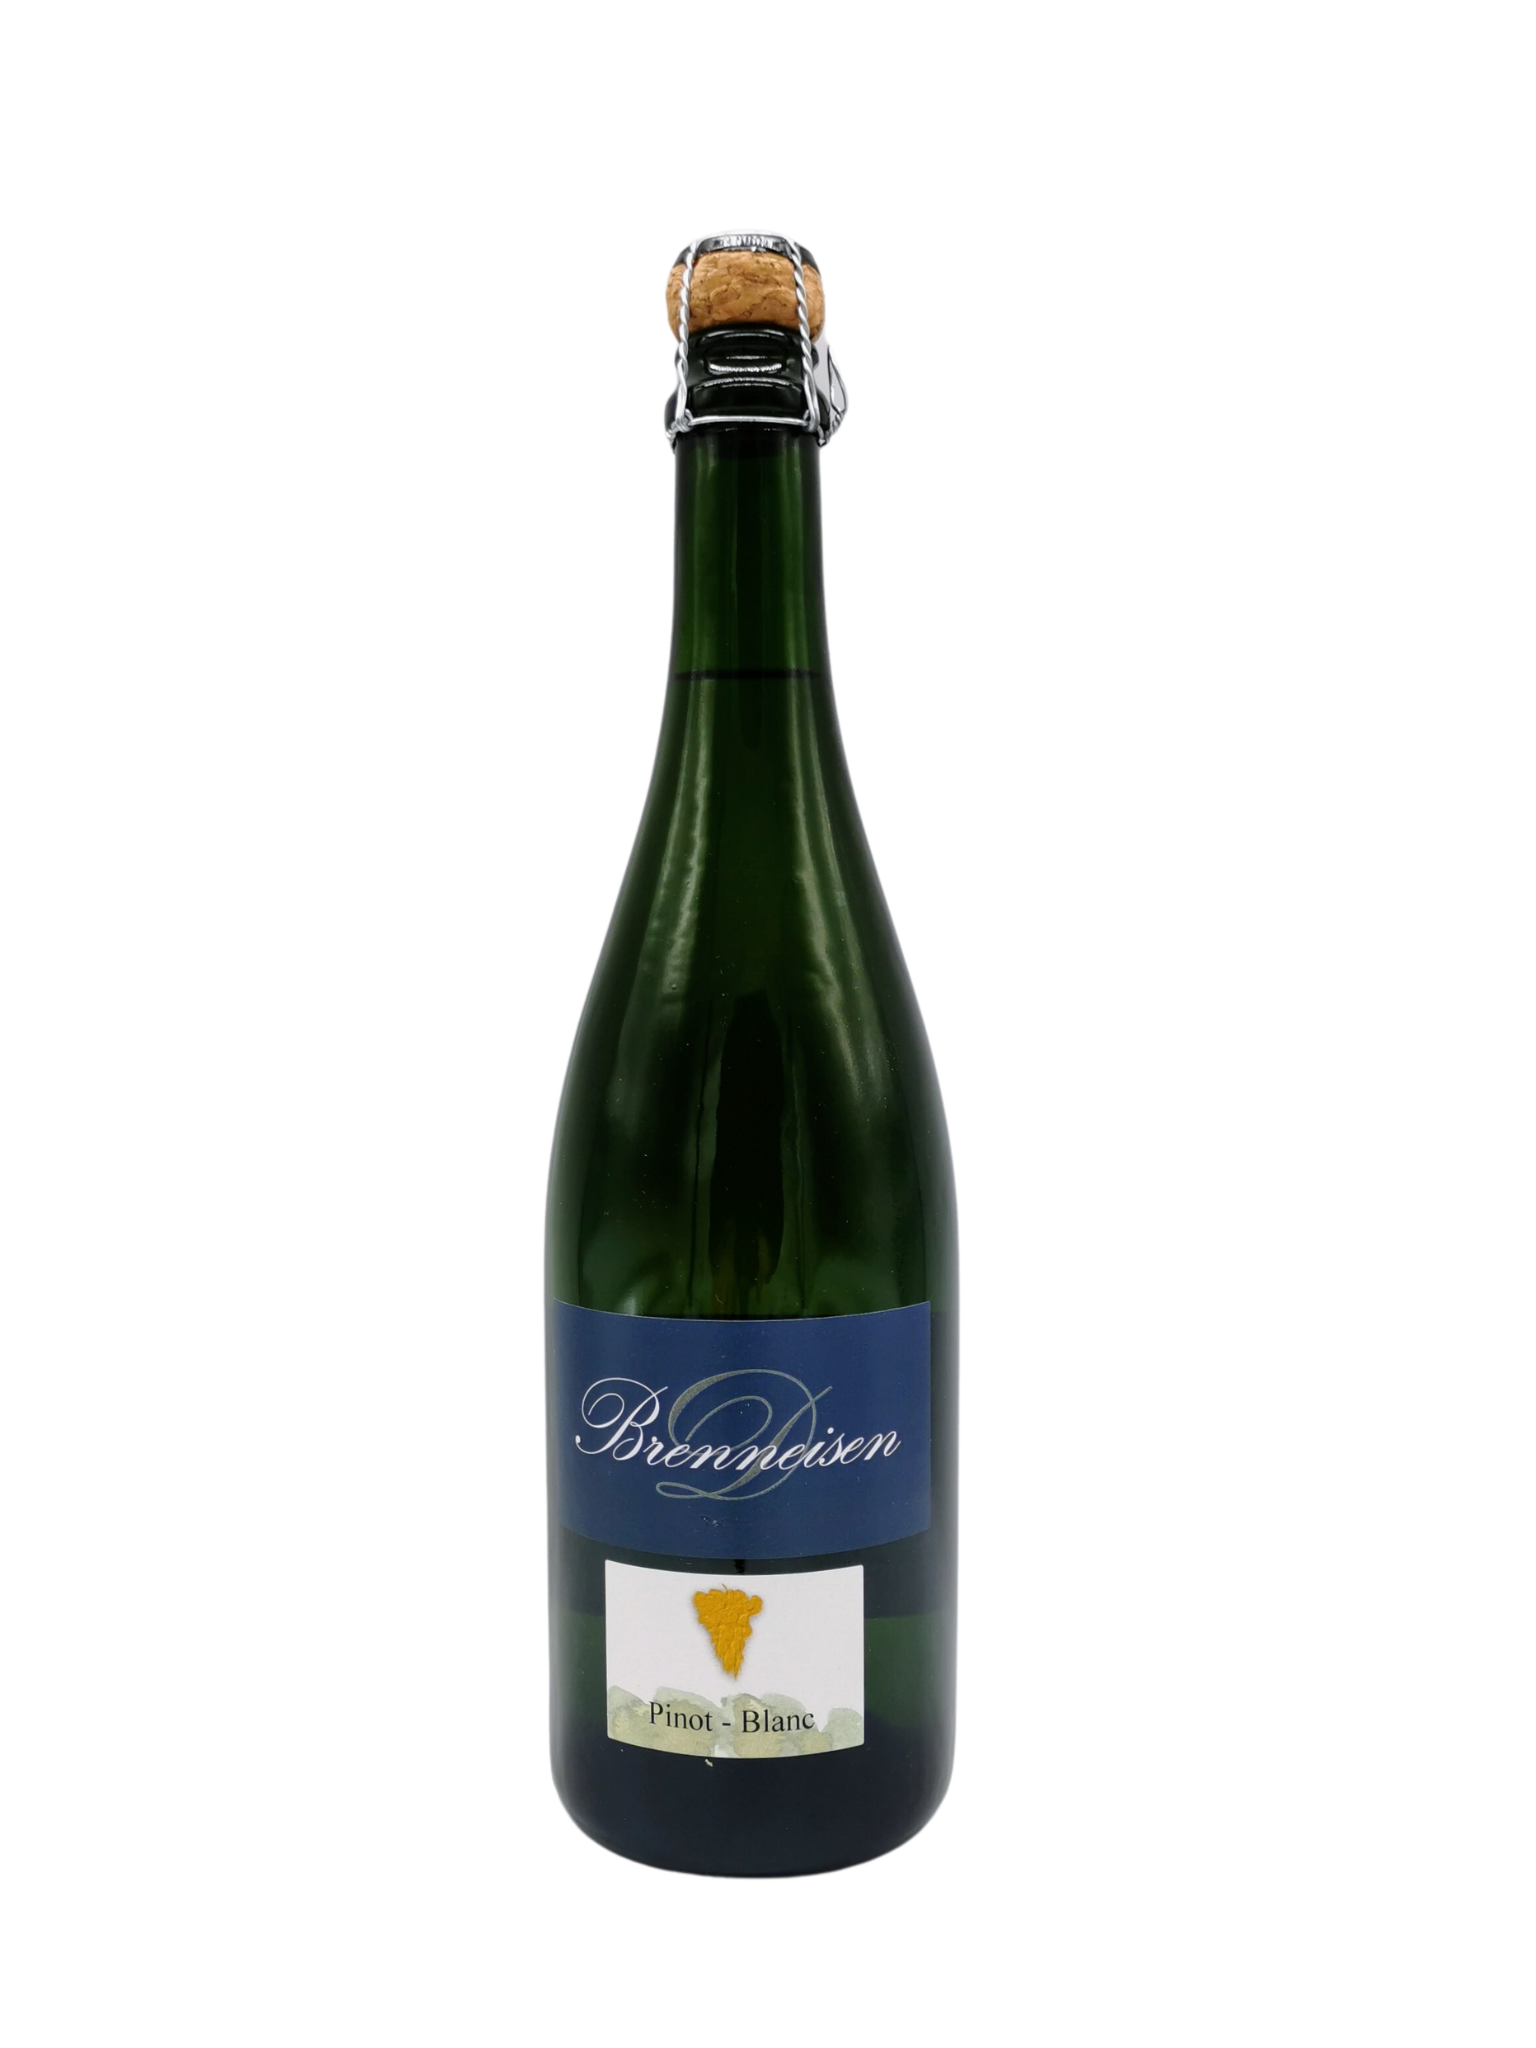 2018 Pinot blanc Sekt - brut -, Weingut Brenneisen, Baden